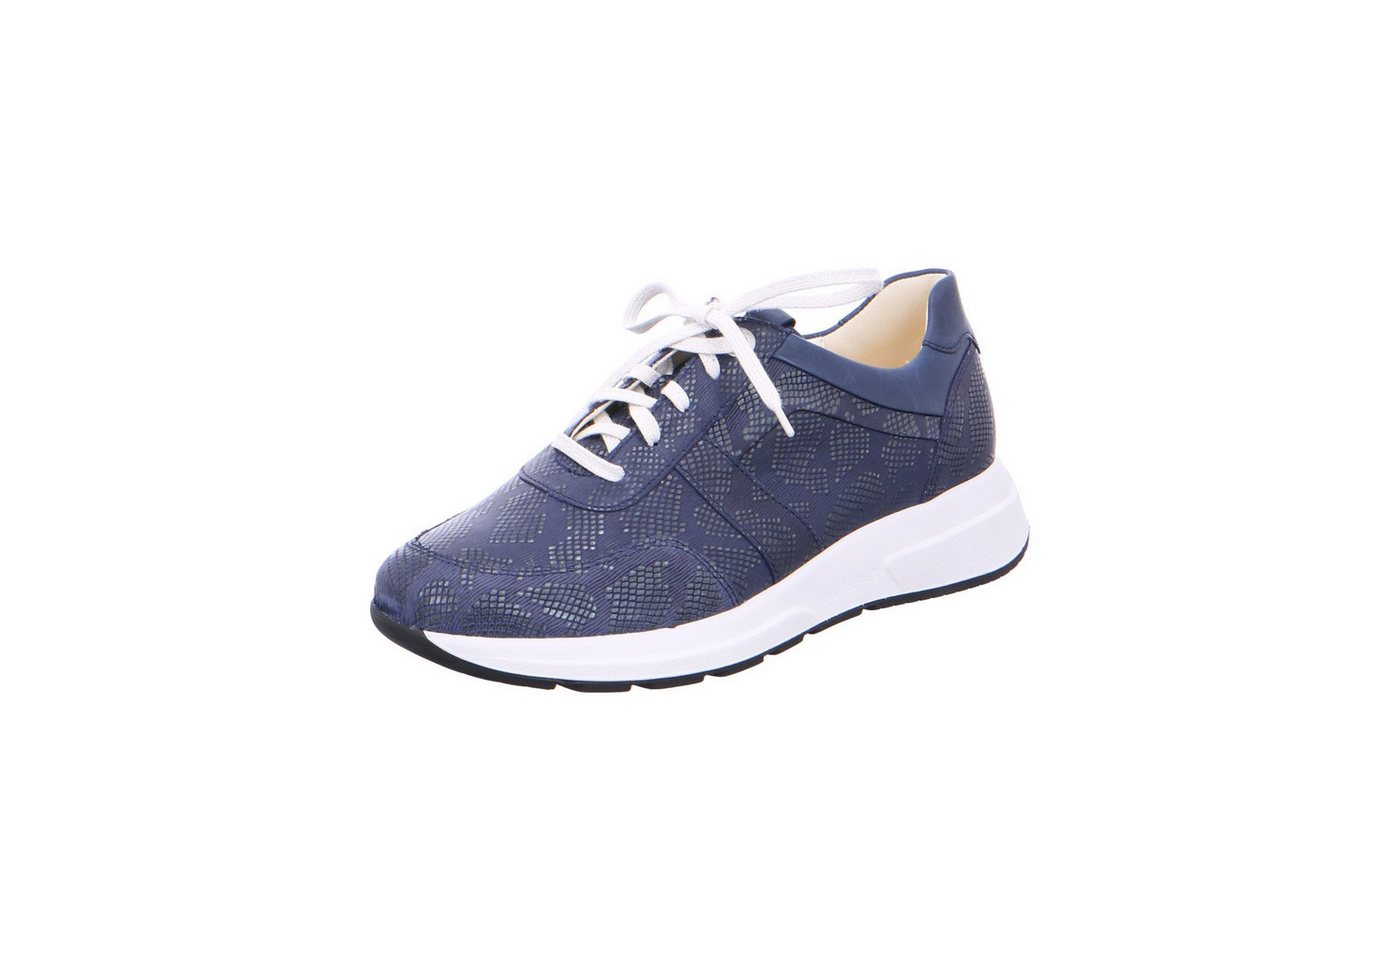 Ganter Giselle - Damen Schuhe Schnürschuh Sneaker Leder blau von Ganter